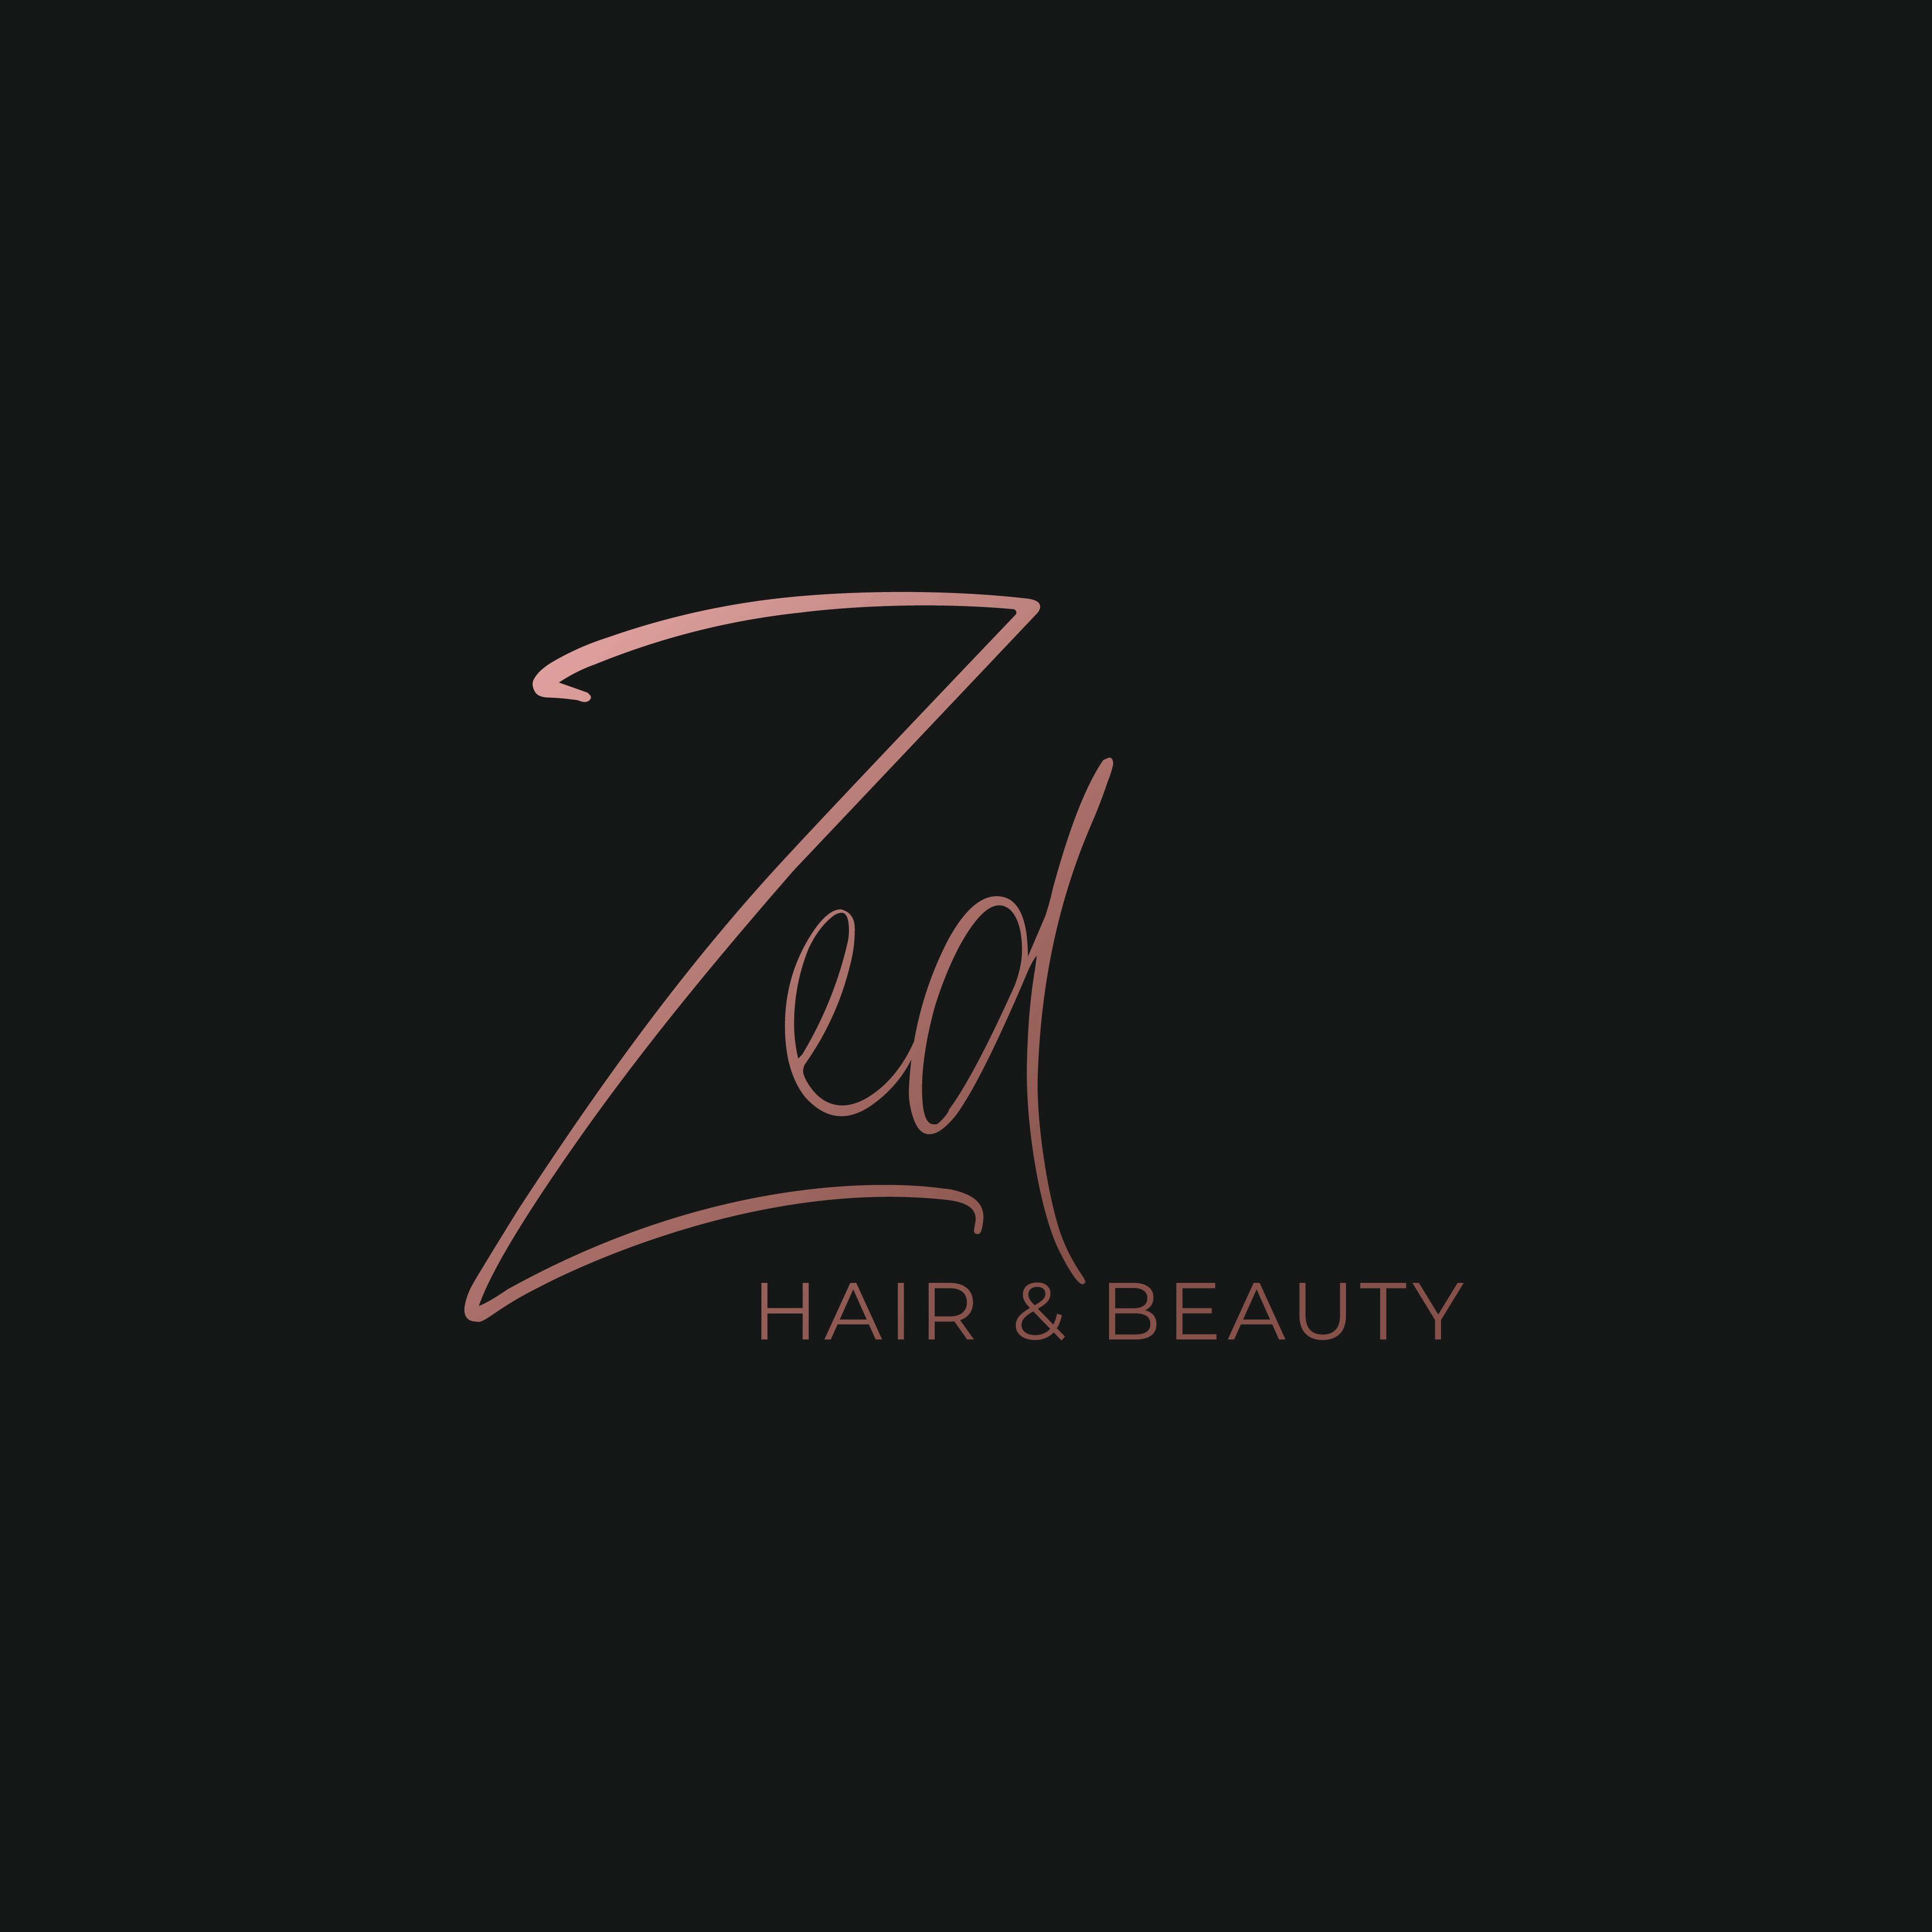 Zed Hair & Beauty